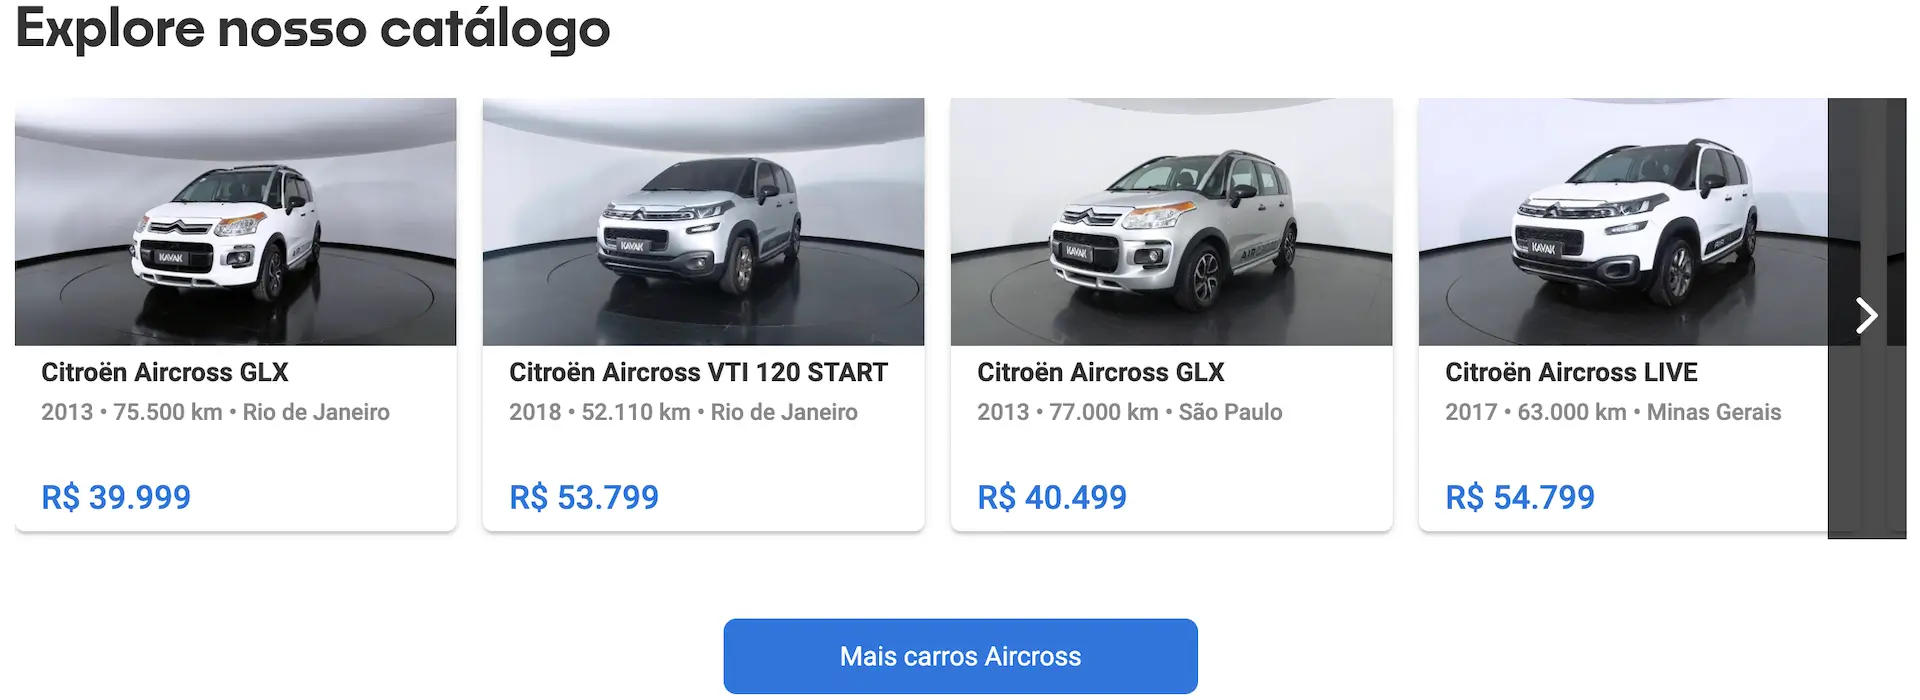 Preço do Aircross Citroën